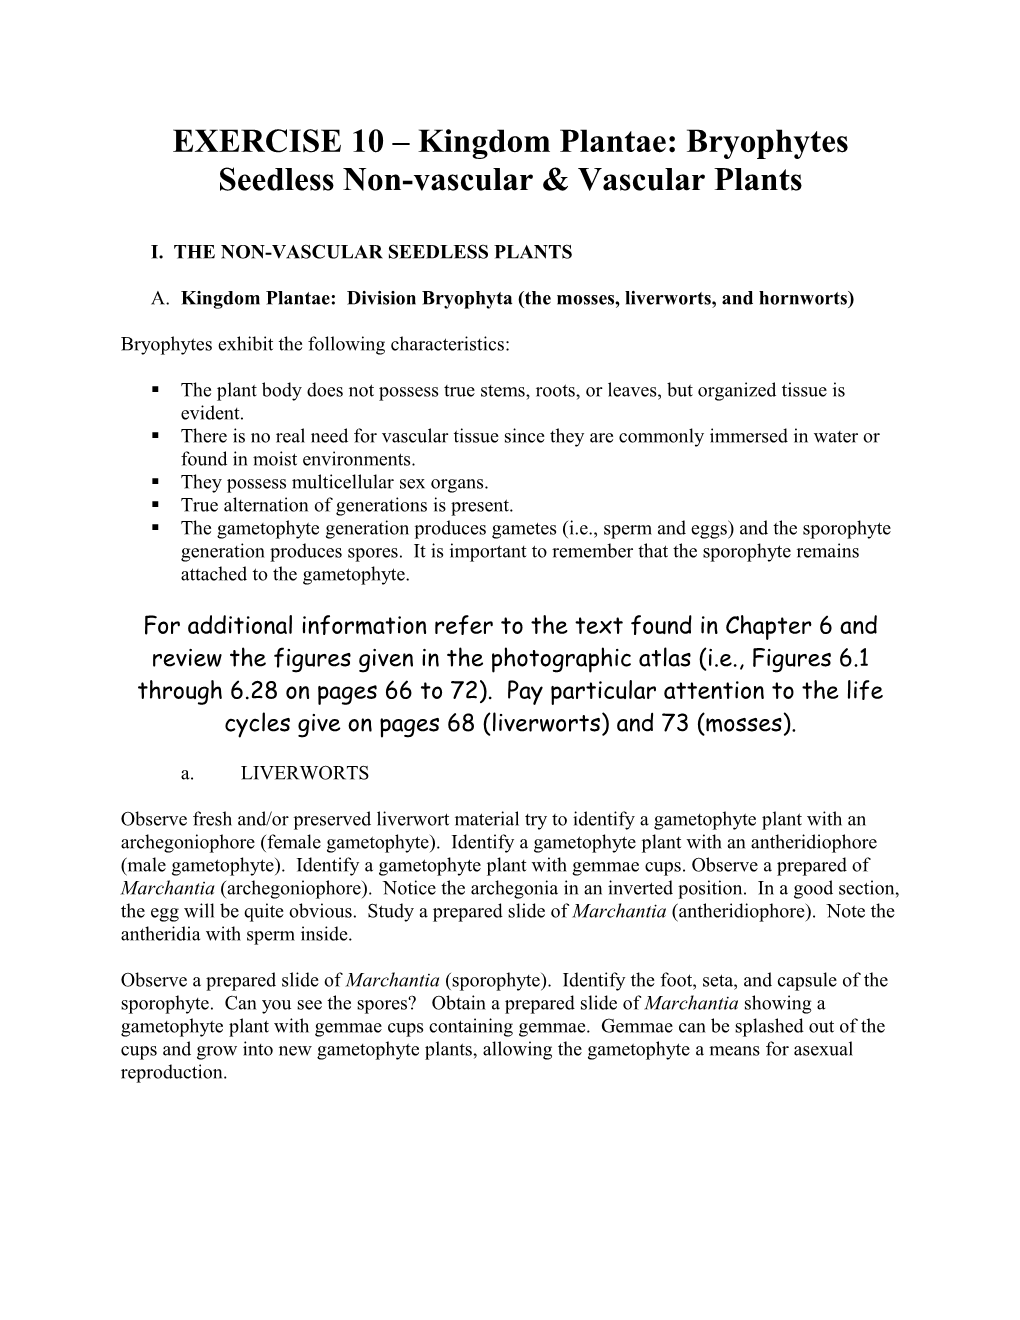 EXERCISE 10 Kingdom Plantae: Bryophytes Seedless Non-Vascular Vascular Plants